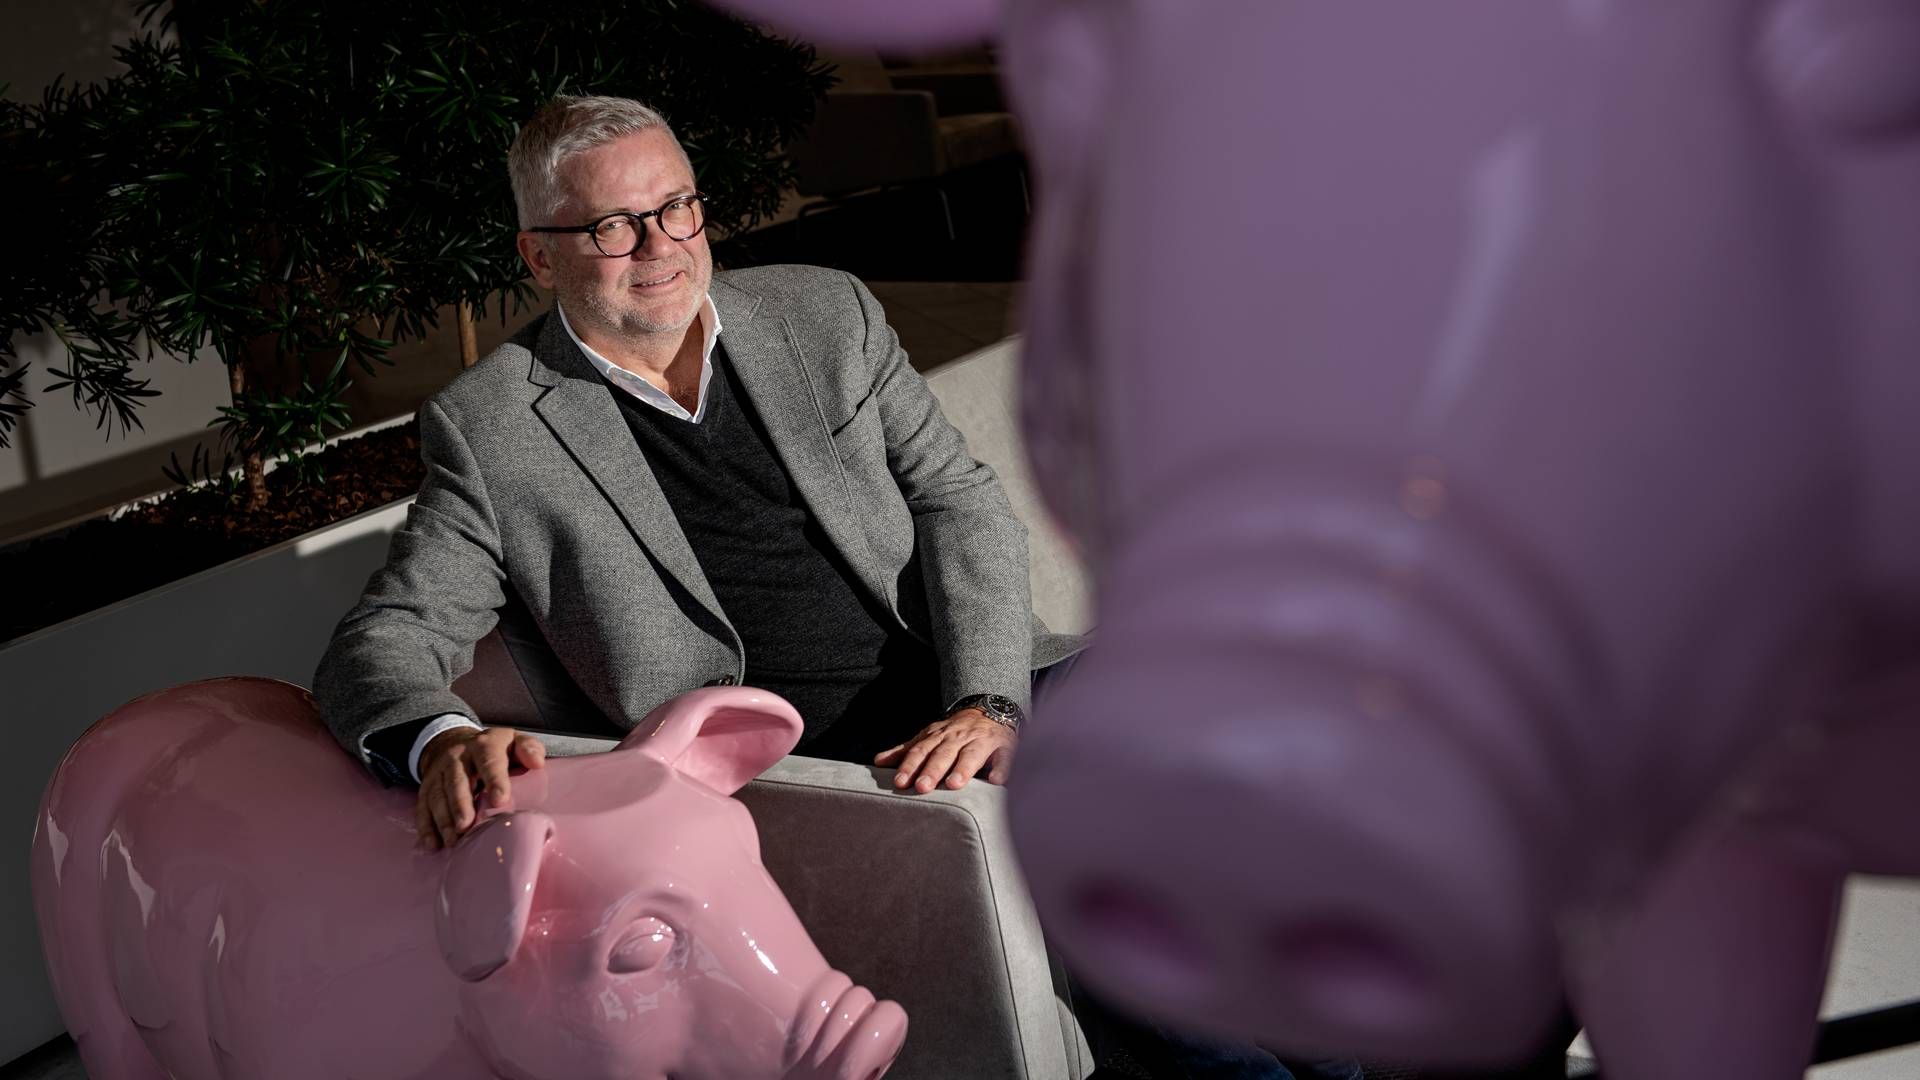 Lars Albertsen spillede som global salgschef en hovedrolle i at banke svineprisen i vejret, da kineserne manglede grisekød i 2019. Nu er han fortid i koncernen. | Foto: Casper Dalhoff